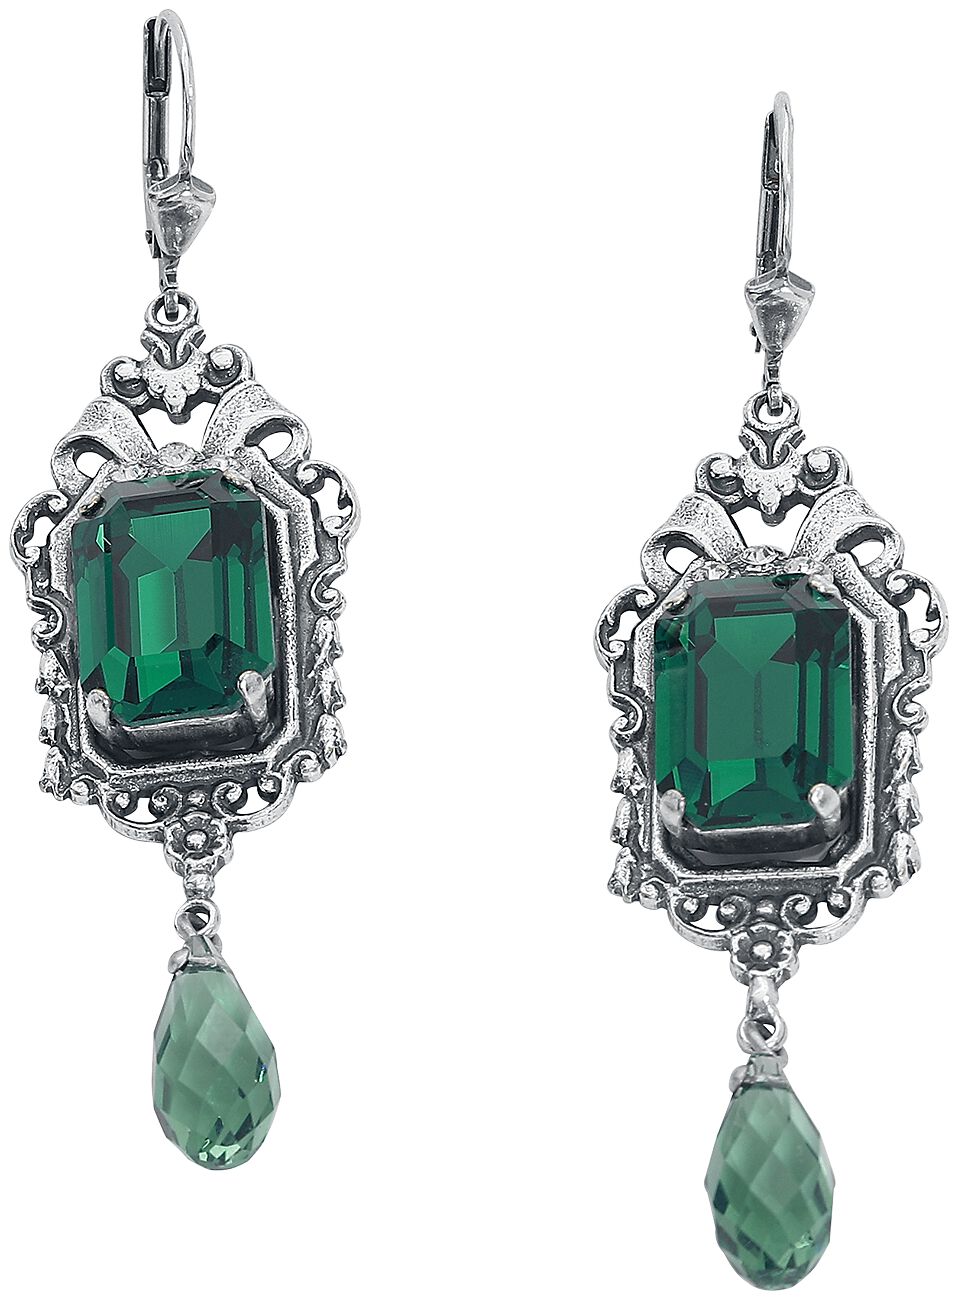 Boucles d'oreilles Gothic de Krikor - Vert Émeraude - pour Femme - couleur argent